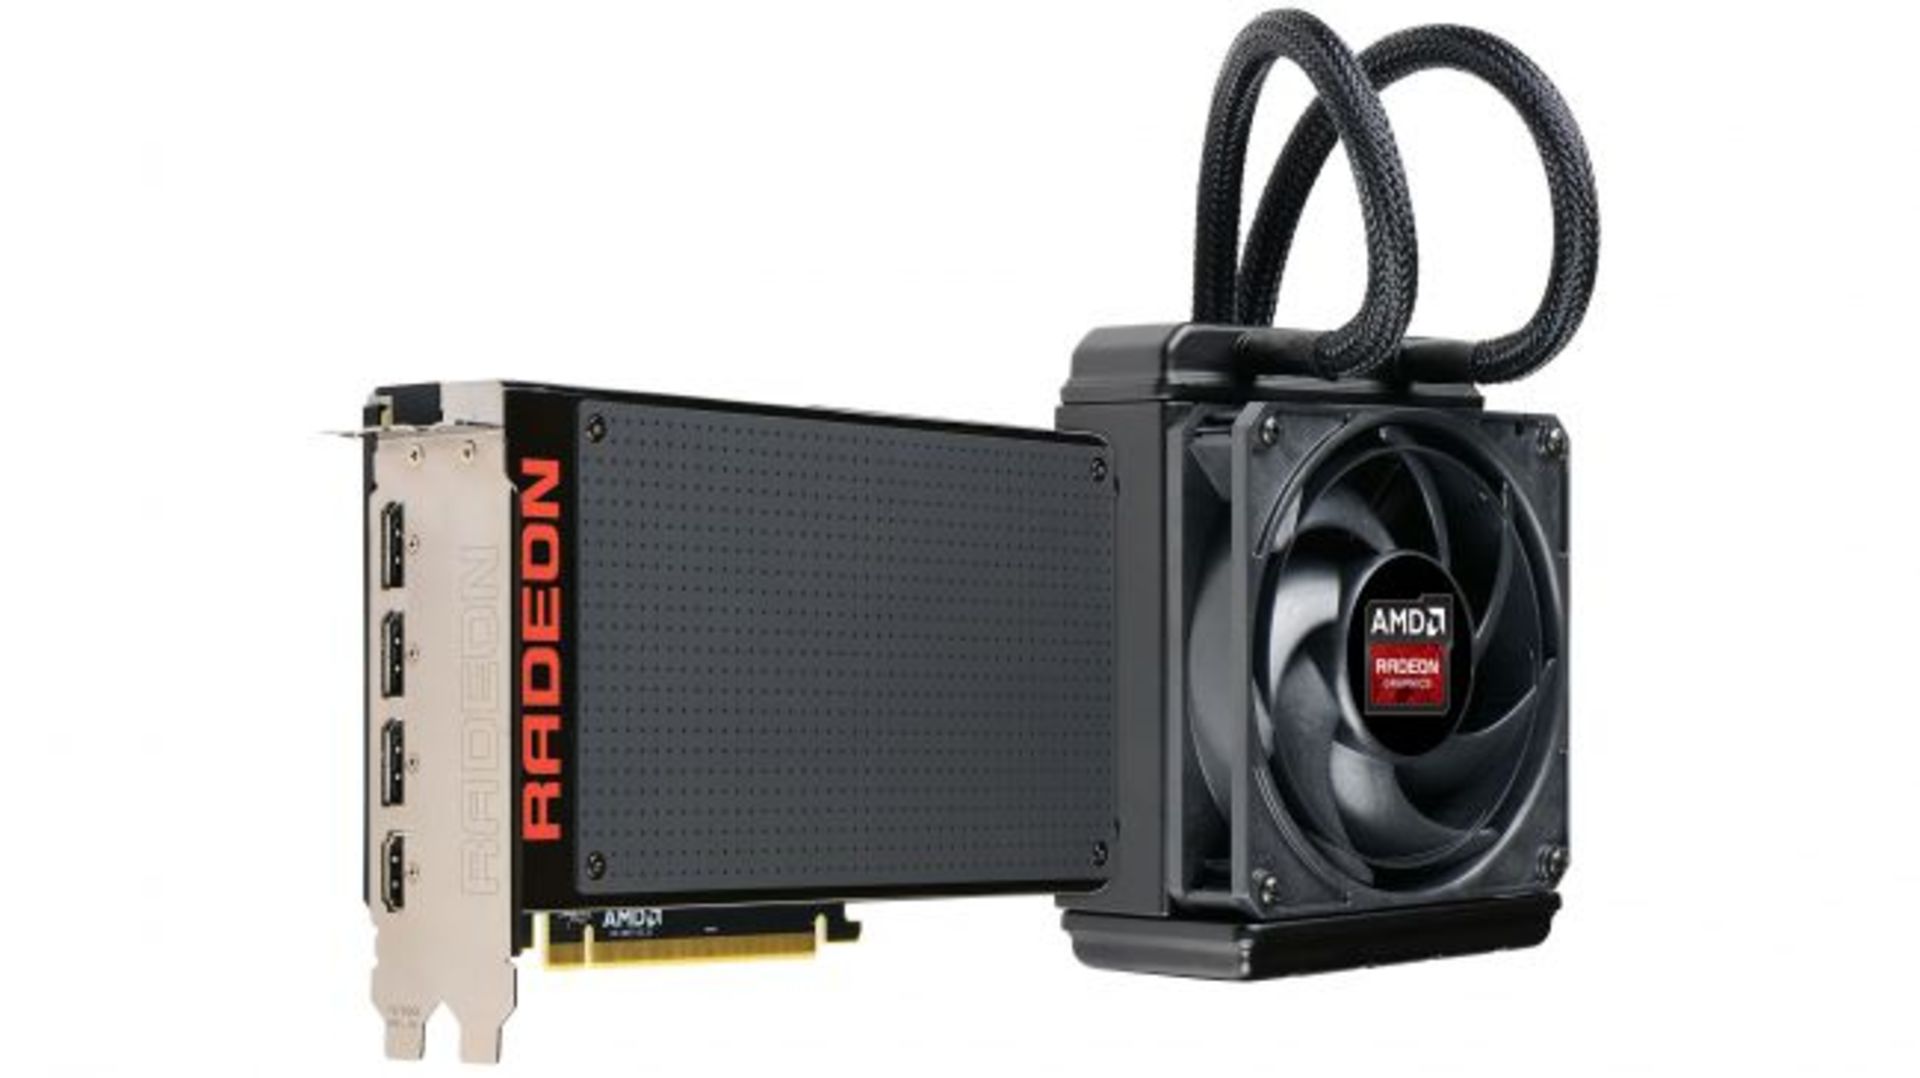 AMD's R9 Fury X